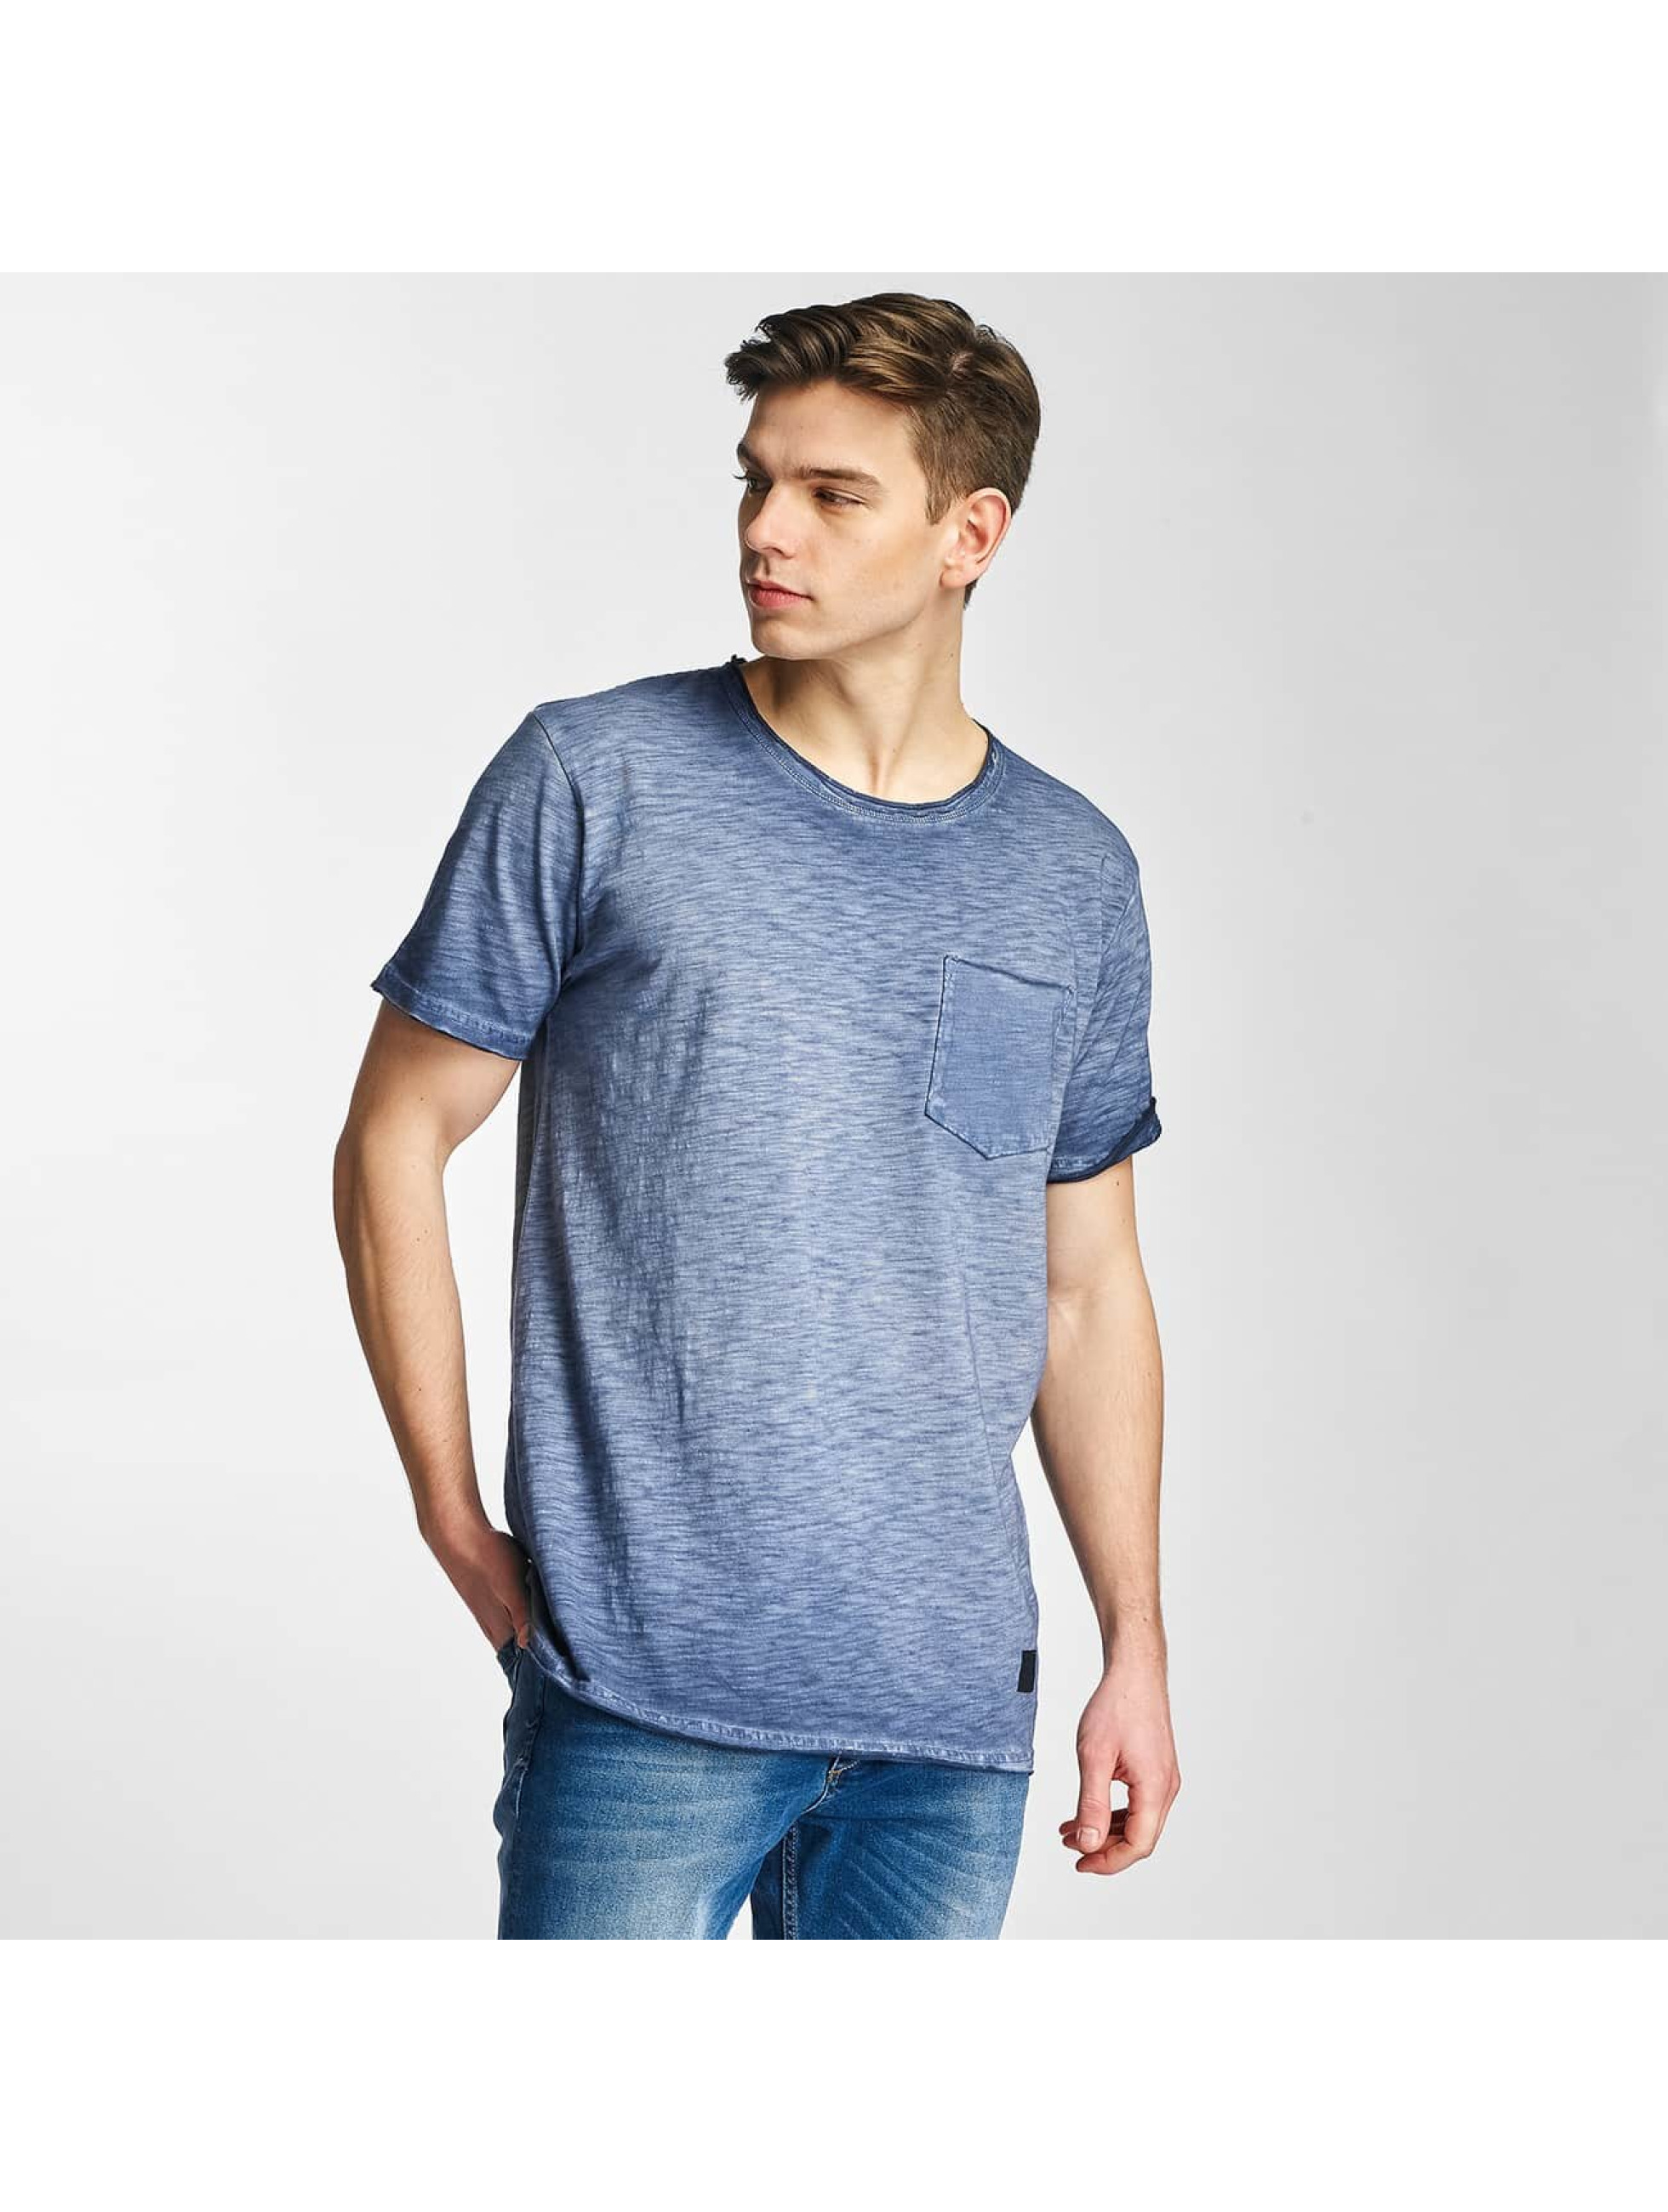 SHINE Original bovenstuk / t-shirt Dye in blauw